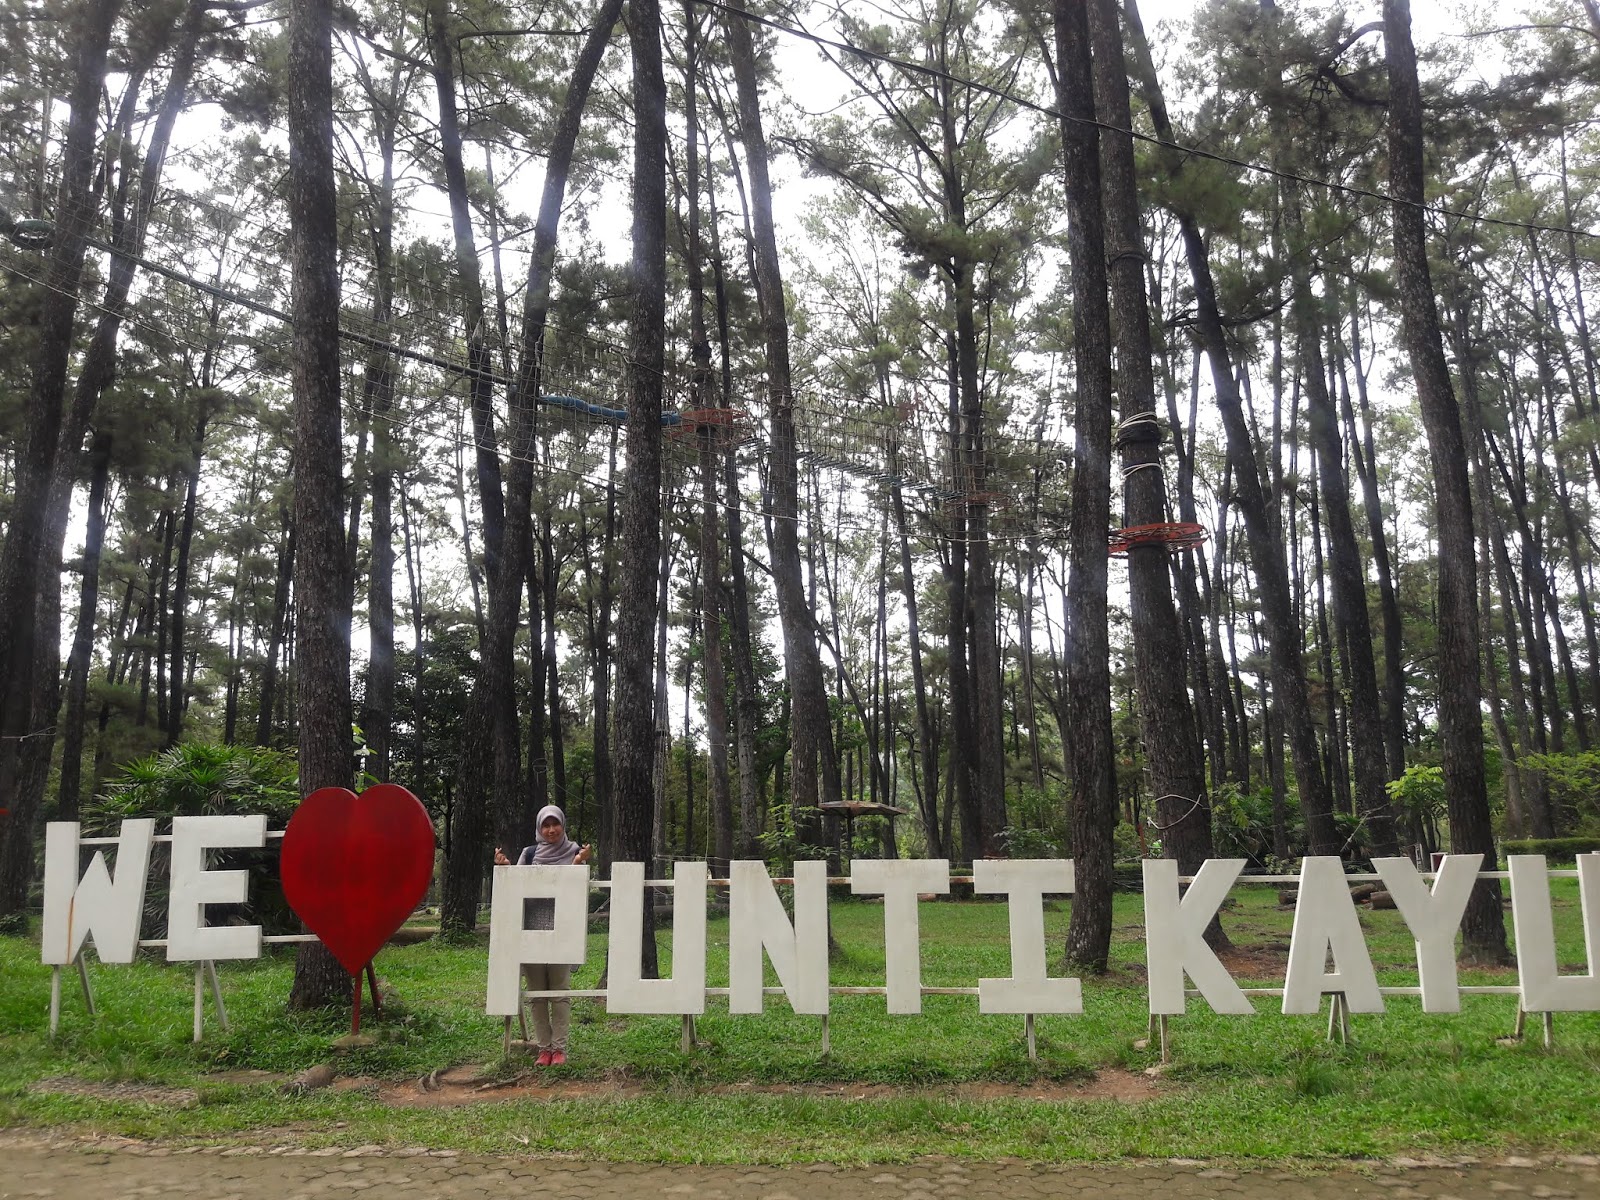  Punti  Kayu  Wisata Alam Kota Palembang  DKR Blog